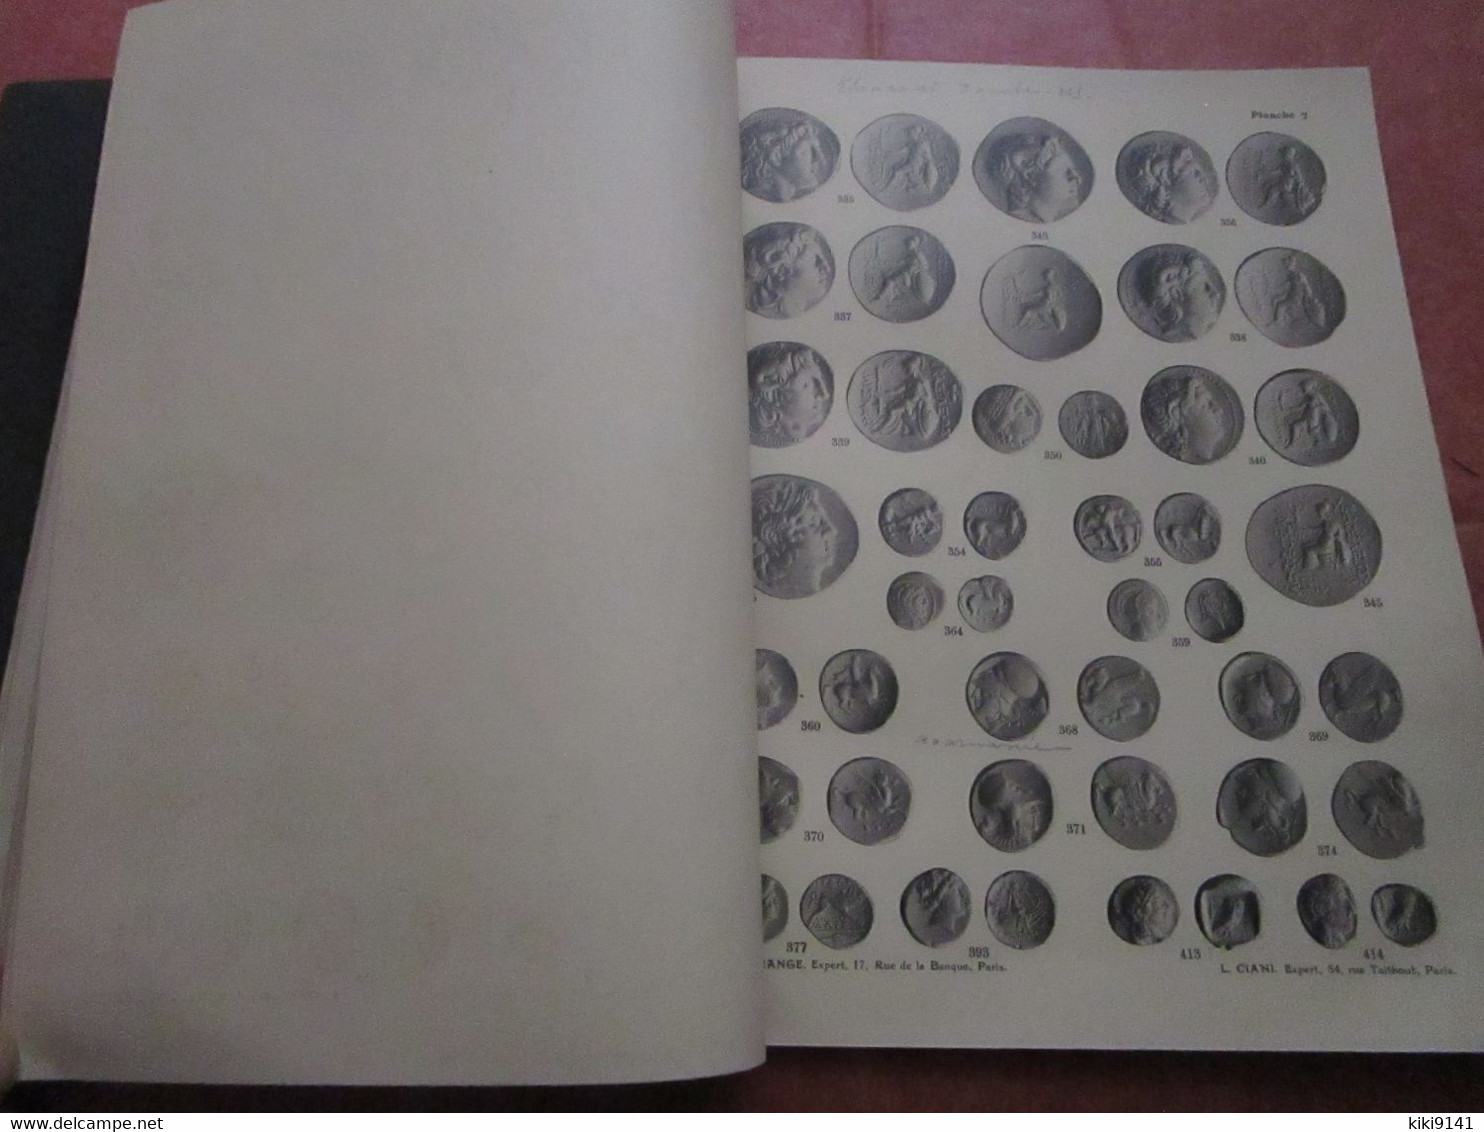 MONNAIES GRECQUES - Catalogue 110 pages descriptives + 31 Planches illustrées